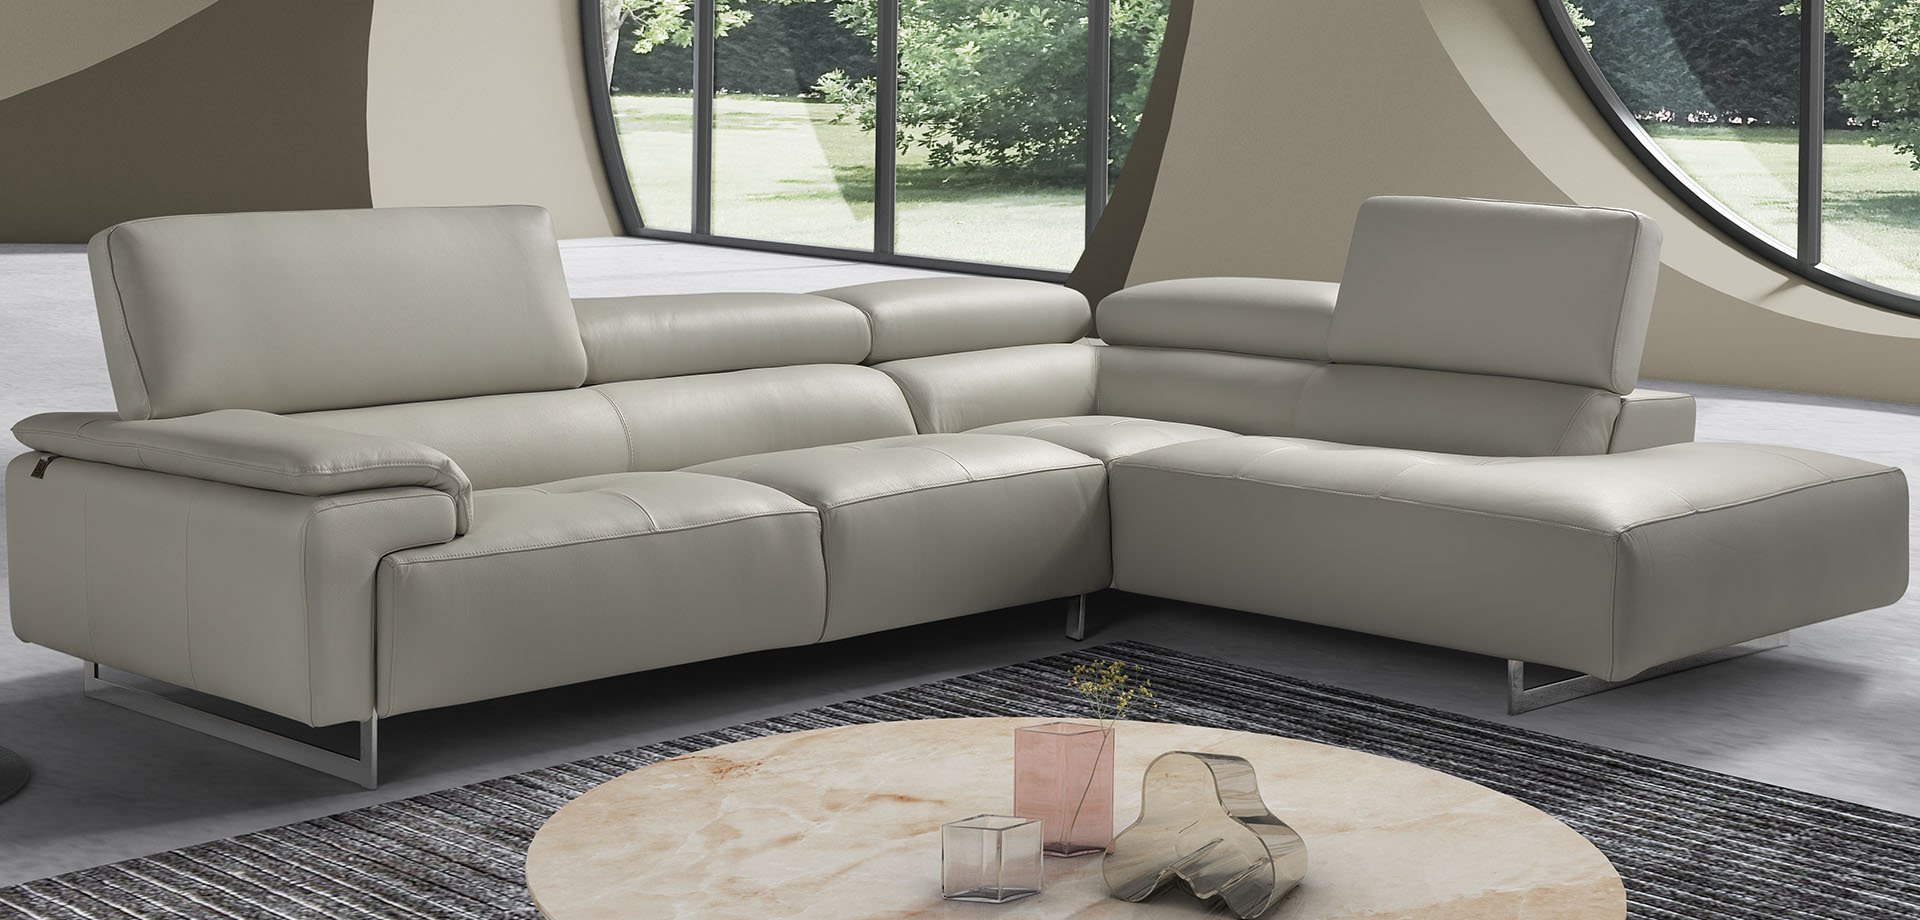 Wish Home Sofas Leather Luxury